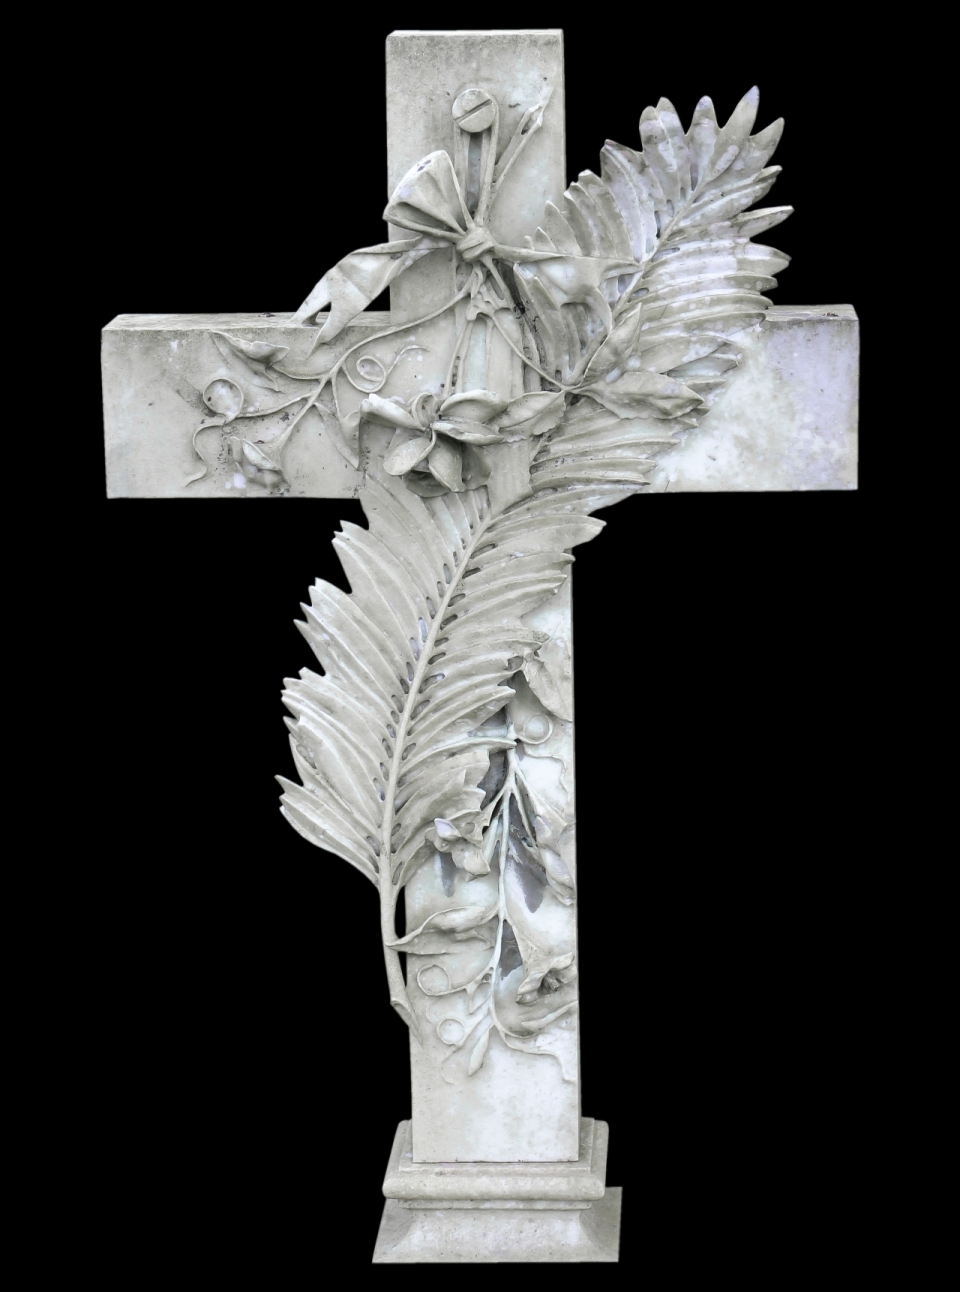 黑色背景白色十字架上羽毛植物雕刻